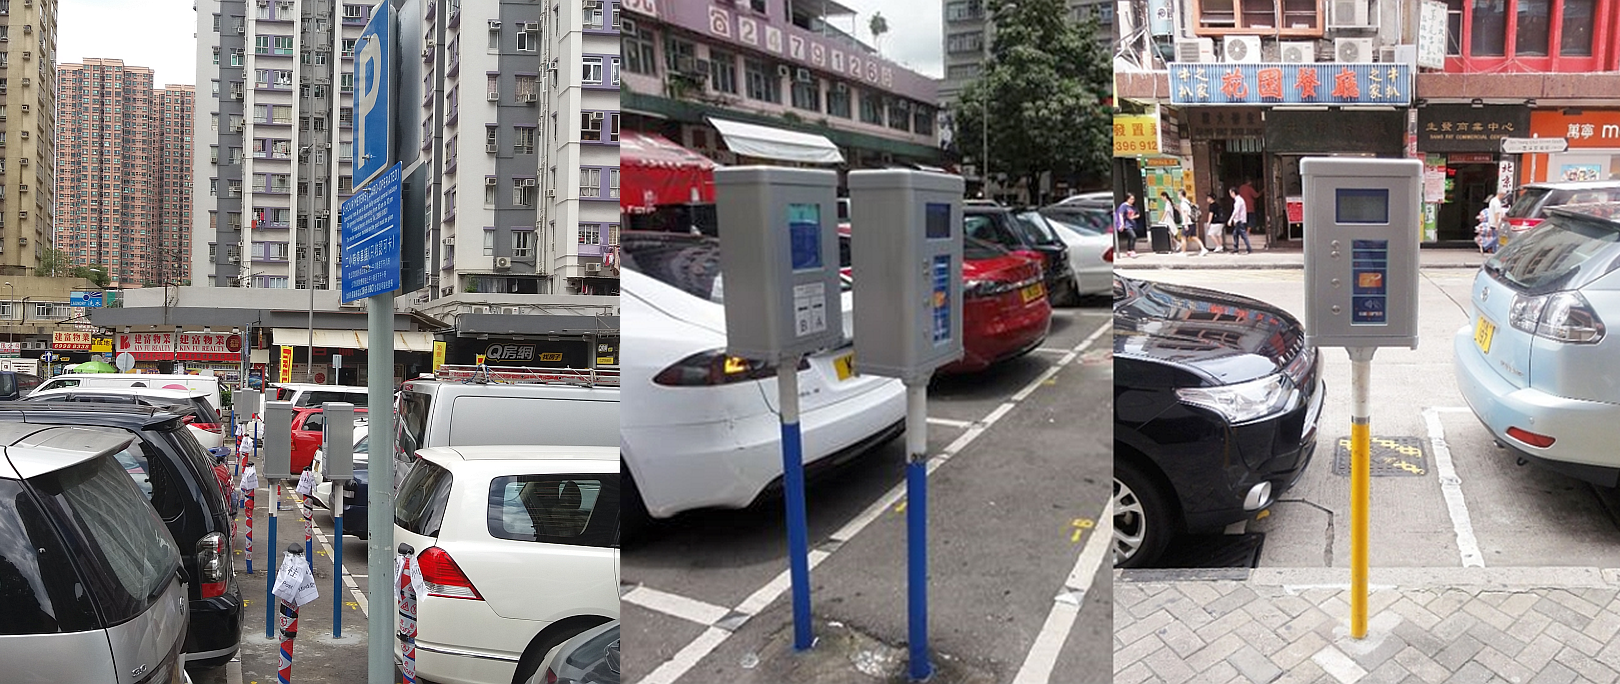 New Parking Meter Trial